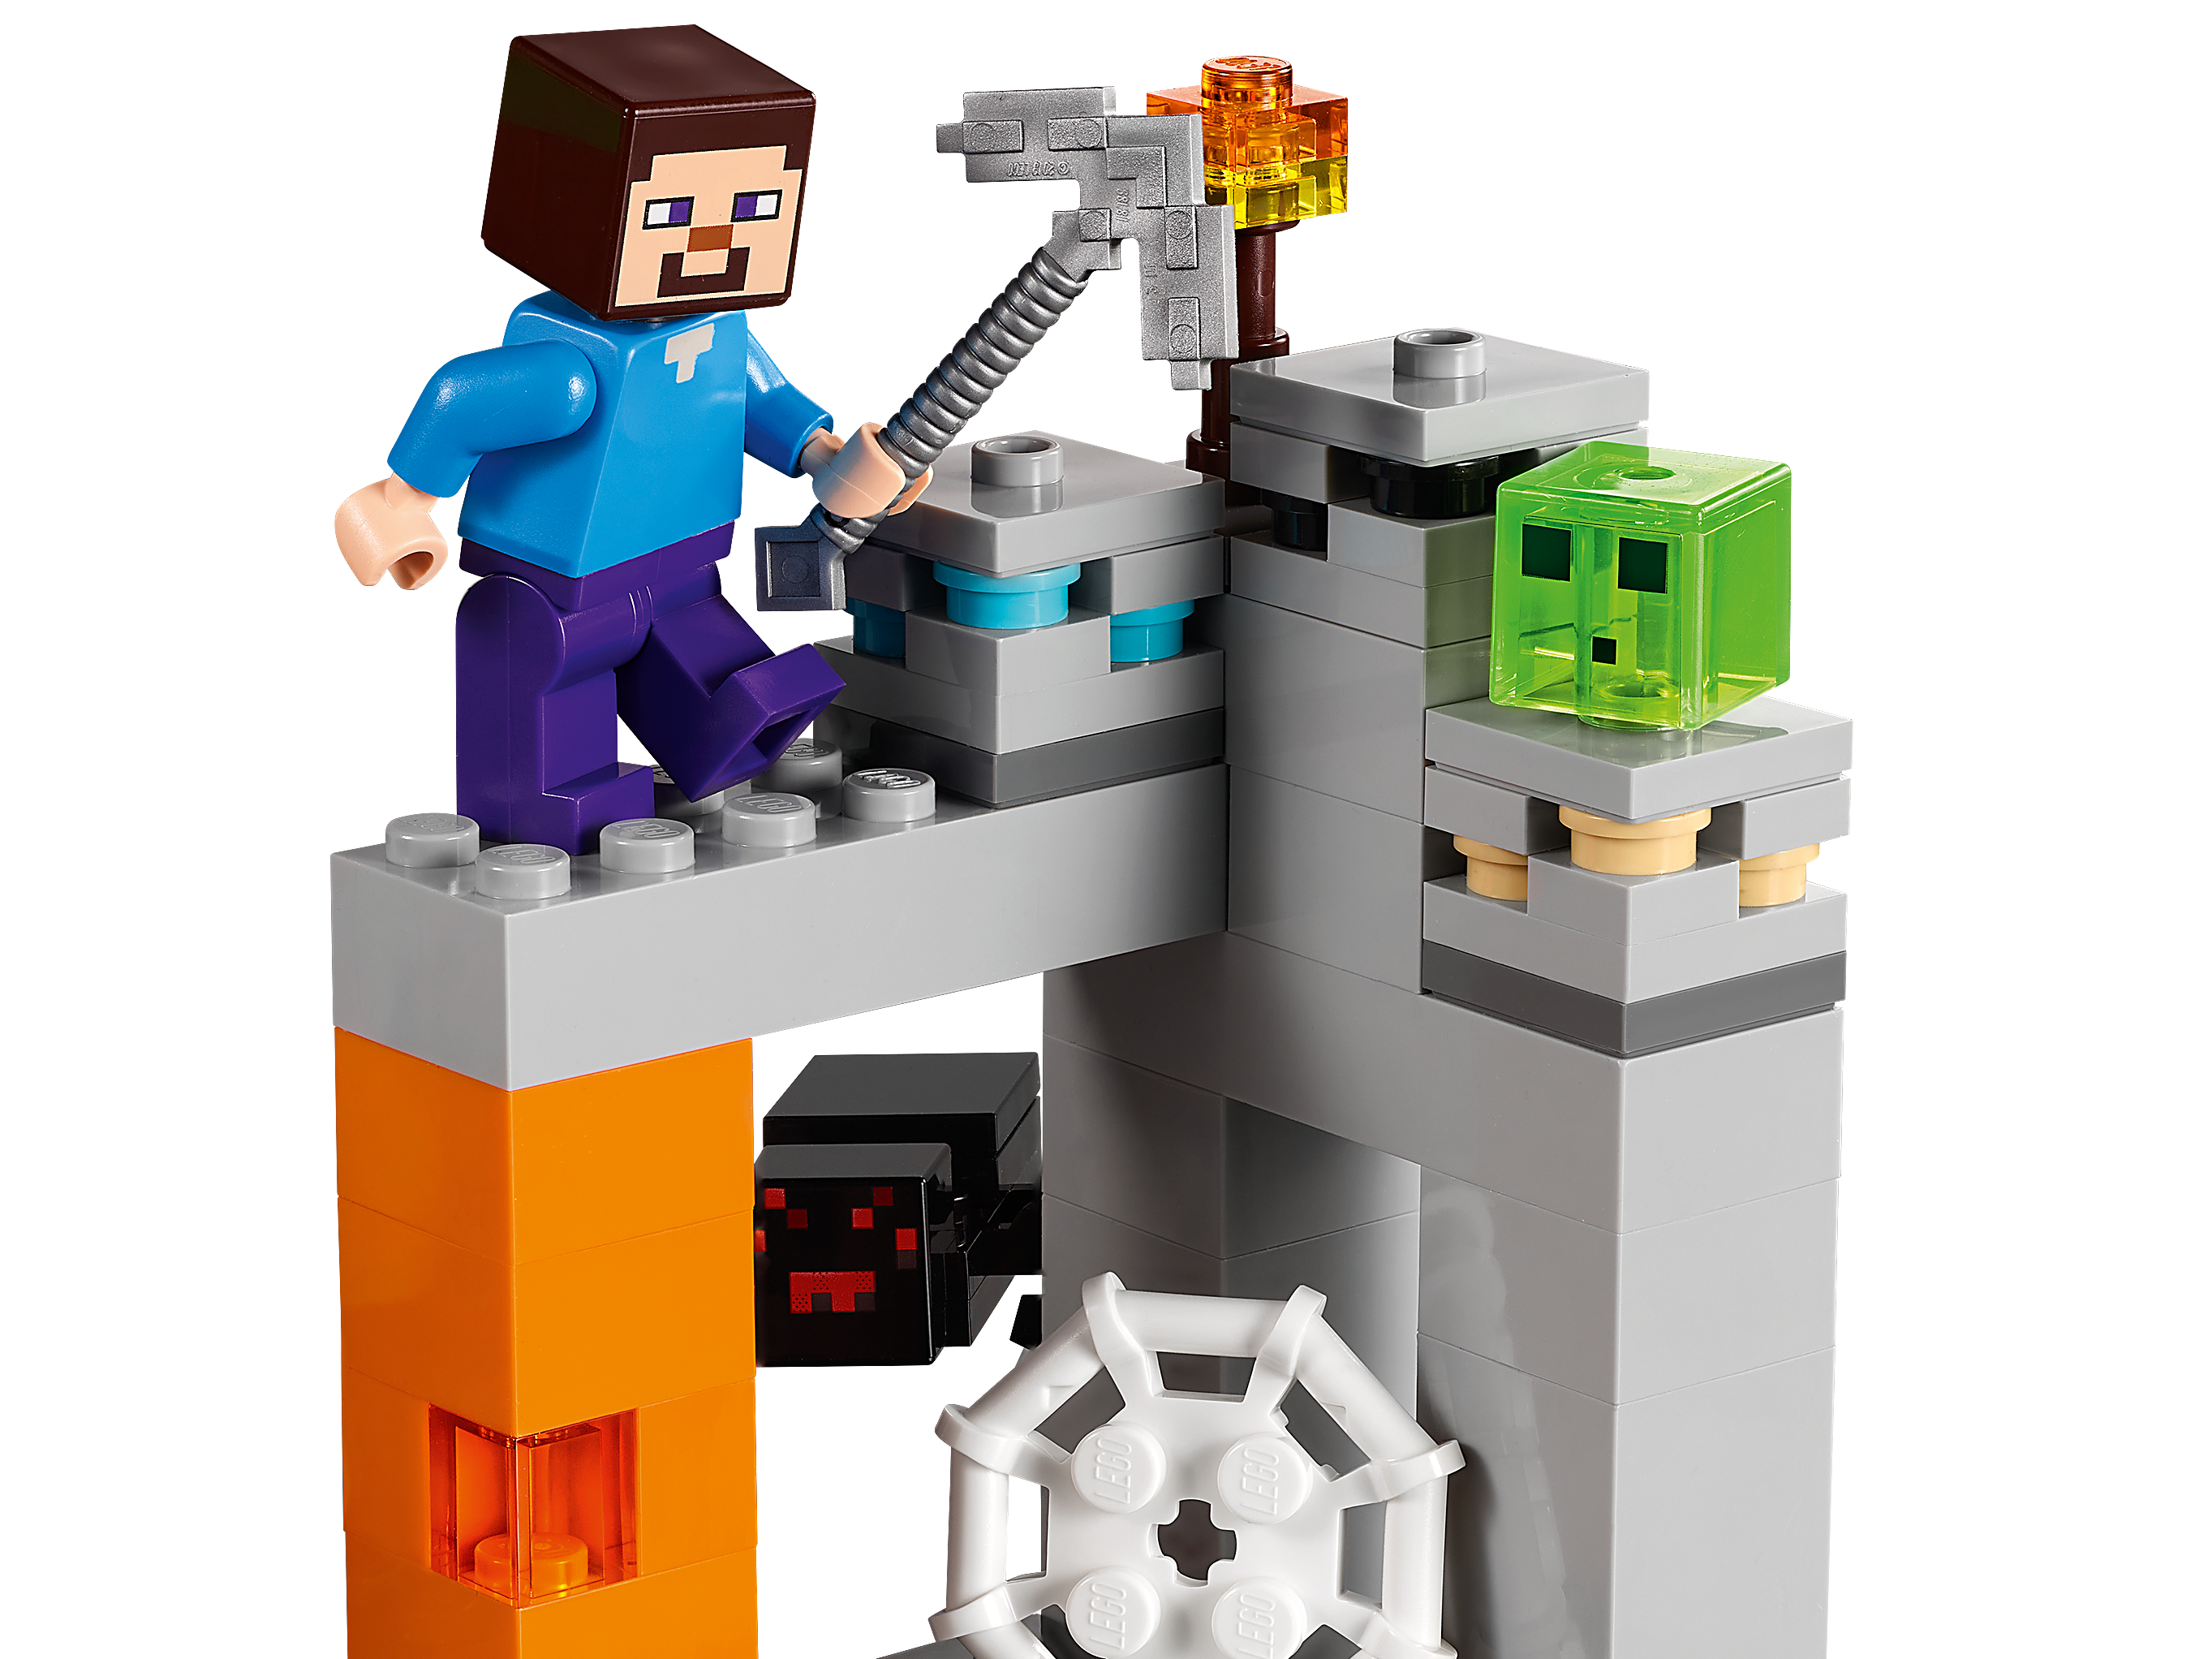 tømmerflåde Definere indtil nu The "Abandoned" Mine 21166 | Minecraft® | Buy online at the Official LEGO®  Shop US